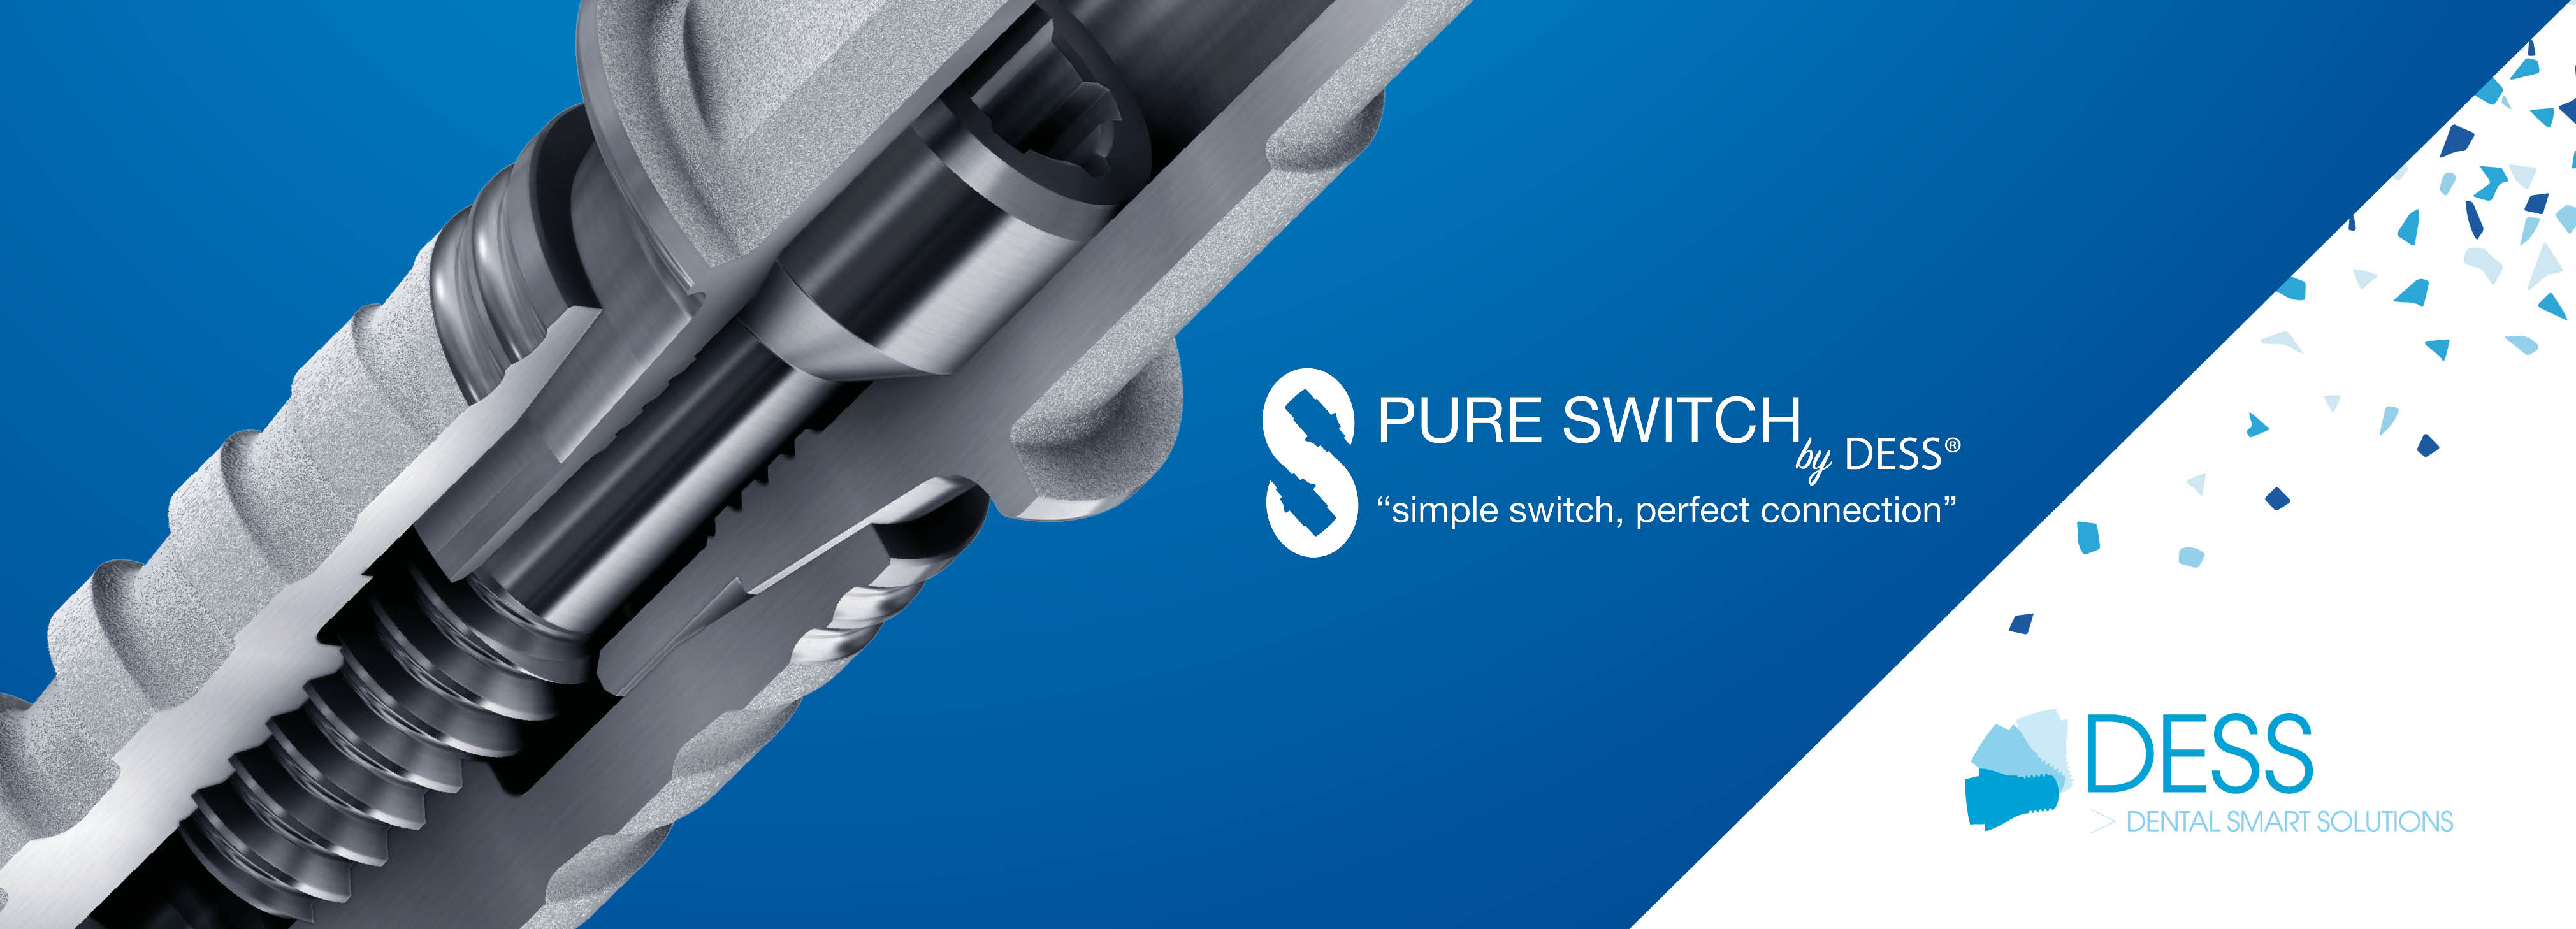 ¿Qué es Pure Switch? Una historia sobre el arte de encajar en DESS® Dental